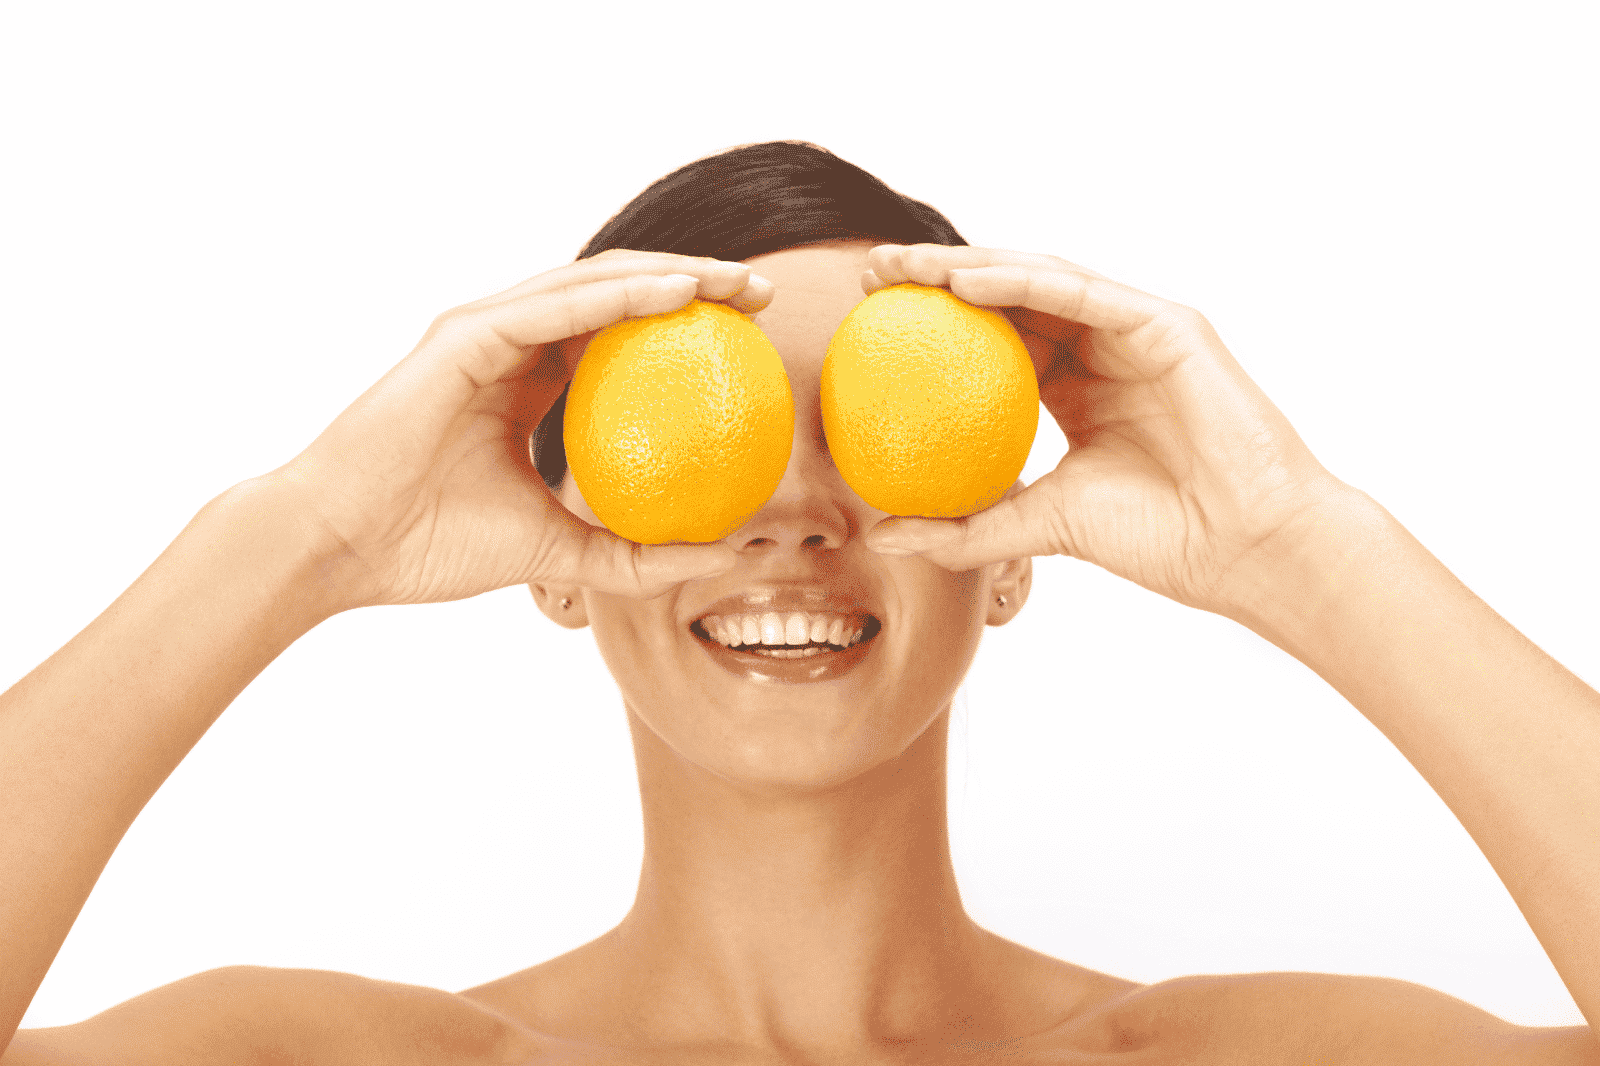 Donna con 2 arance davanti agli occhi